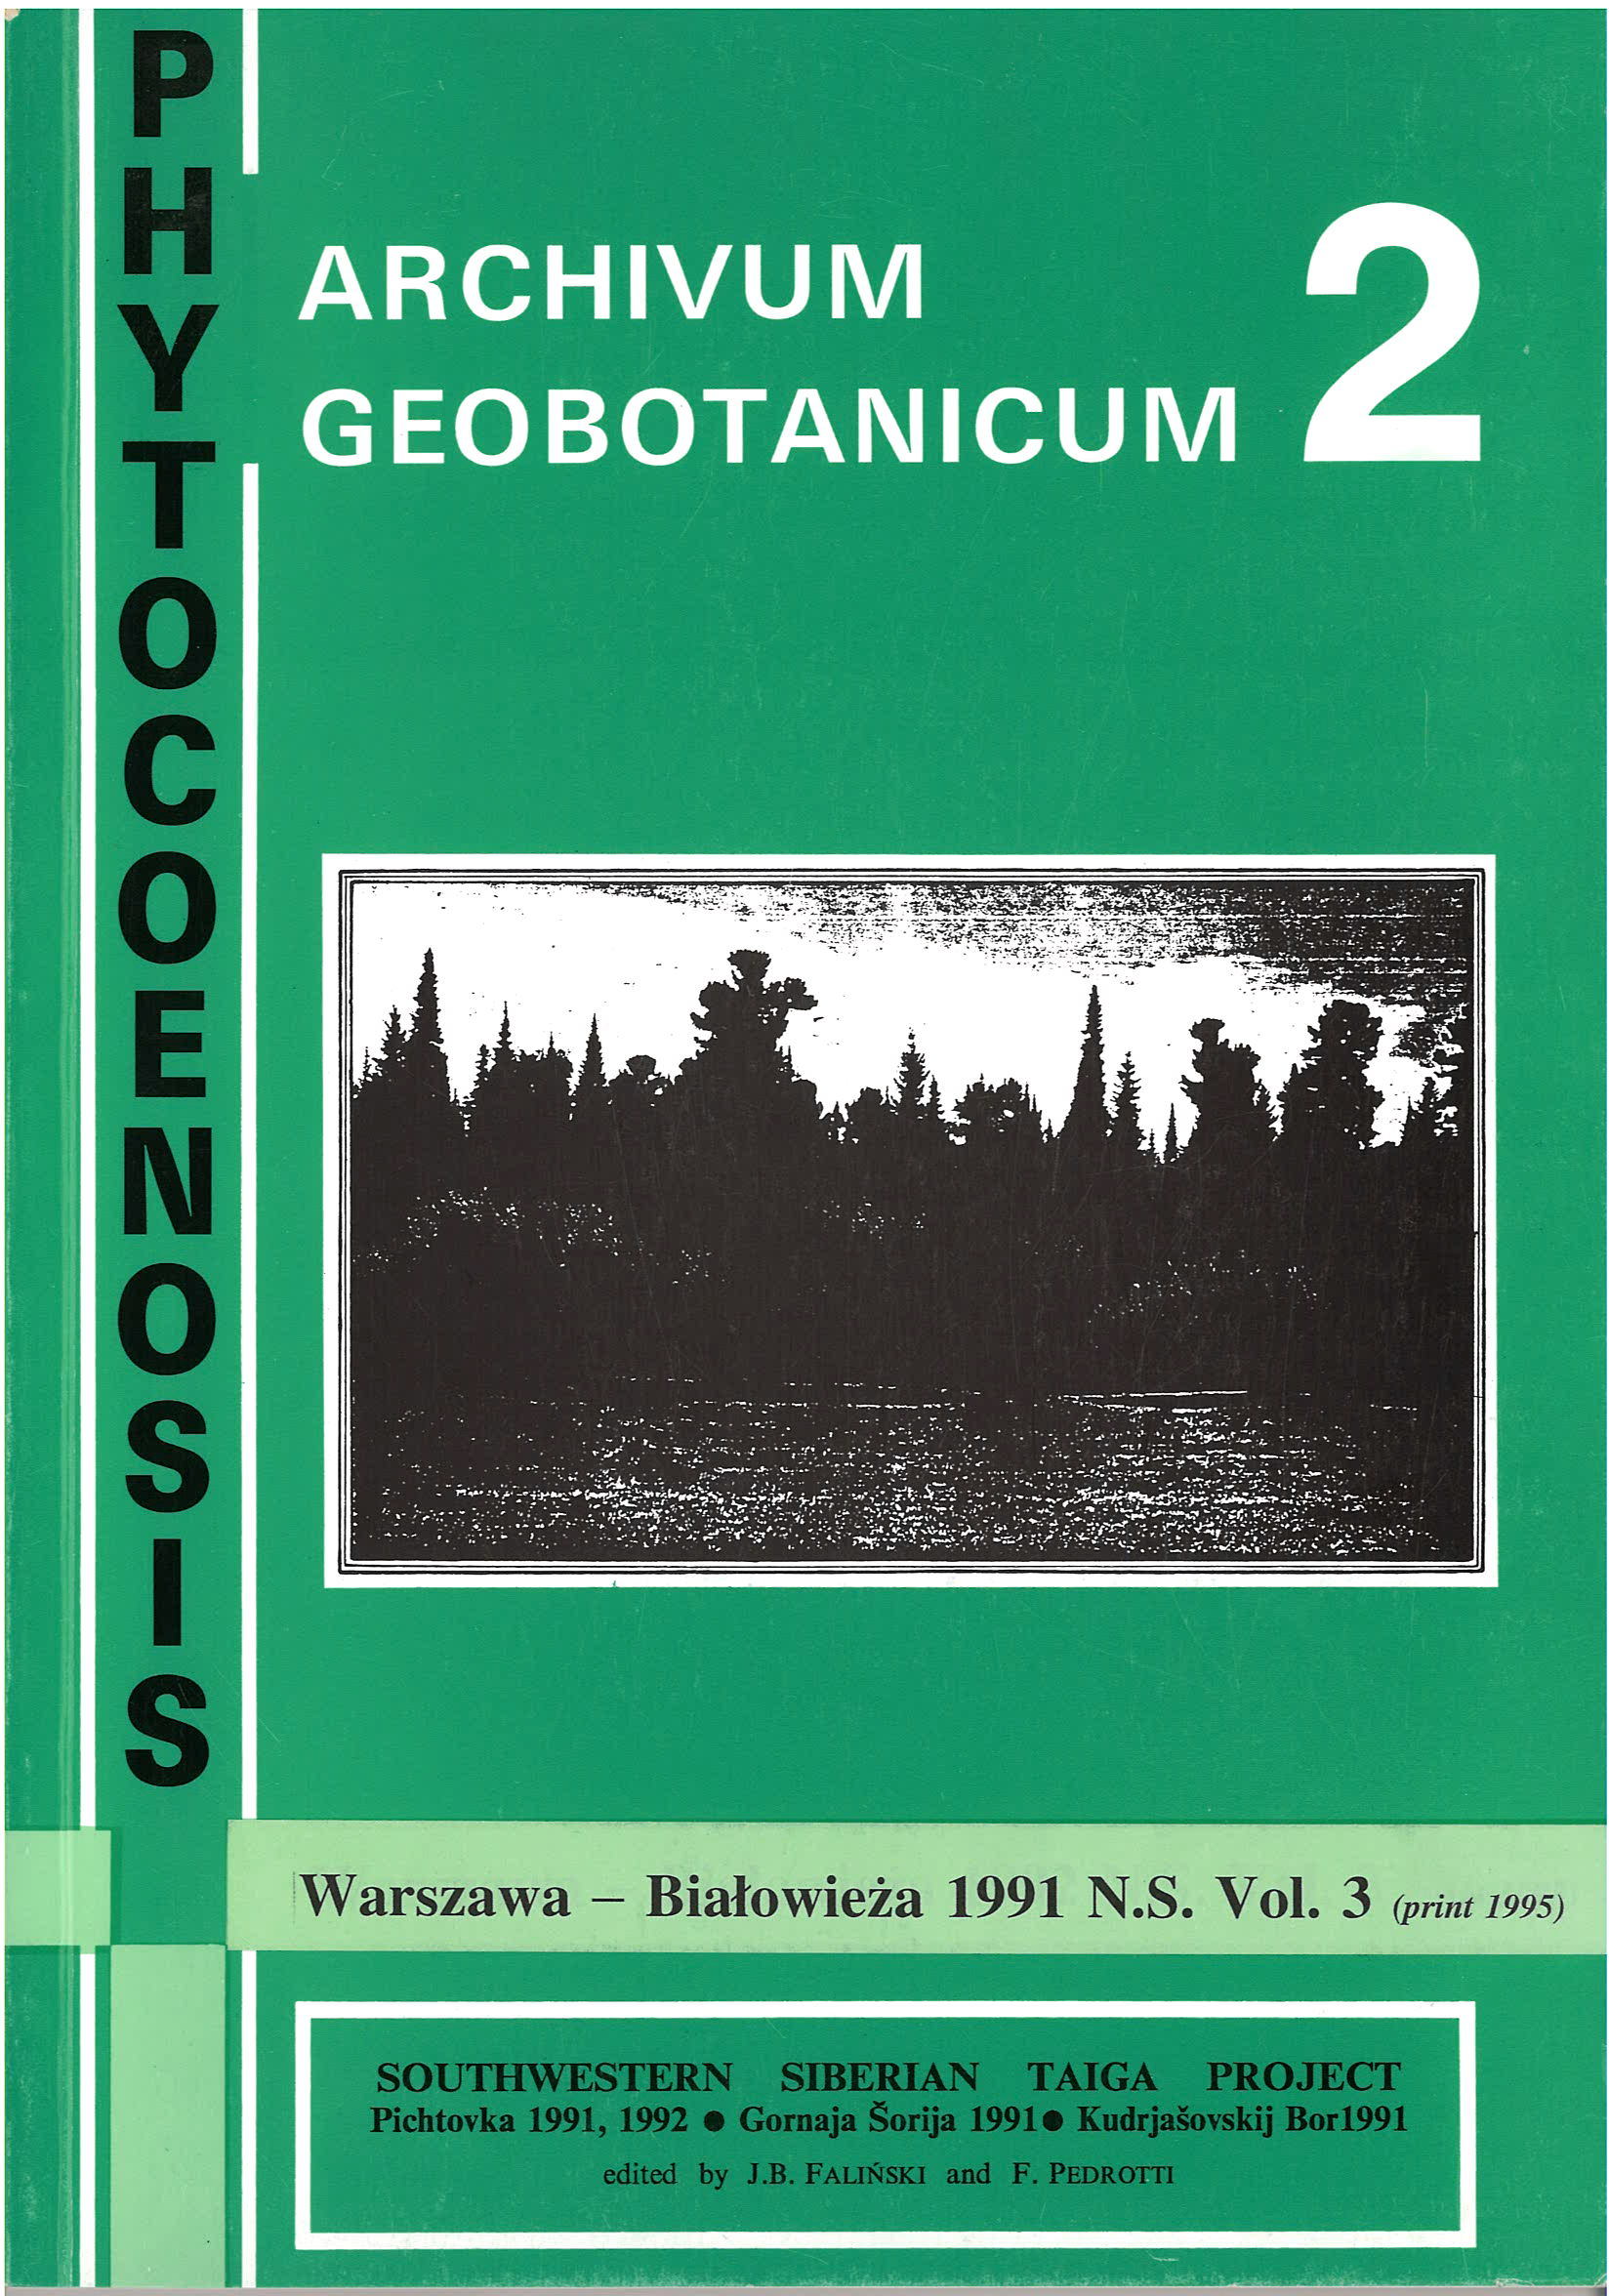 Phytocoenosis (N.S.) 3, Archivum Geobotanicum 2